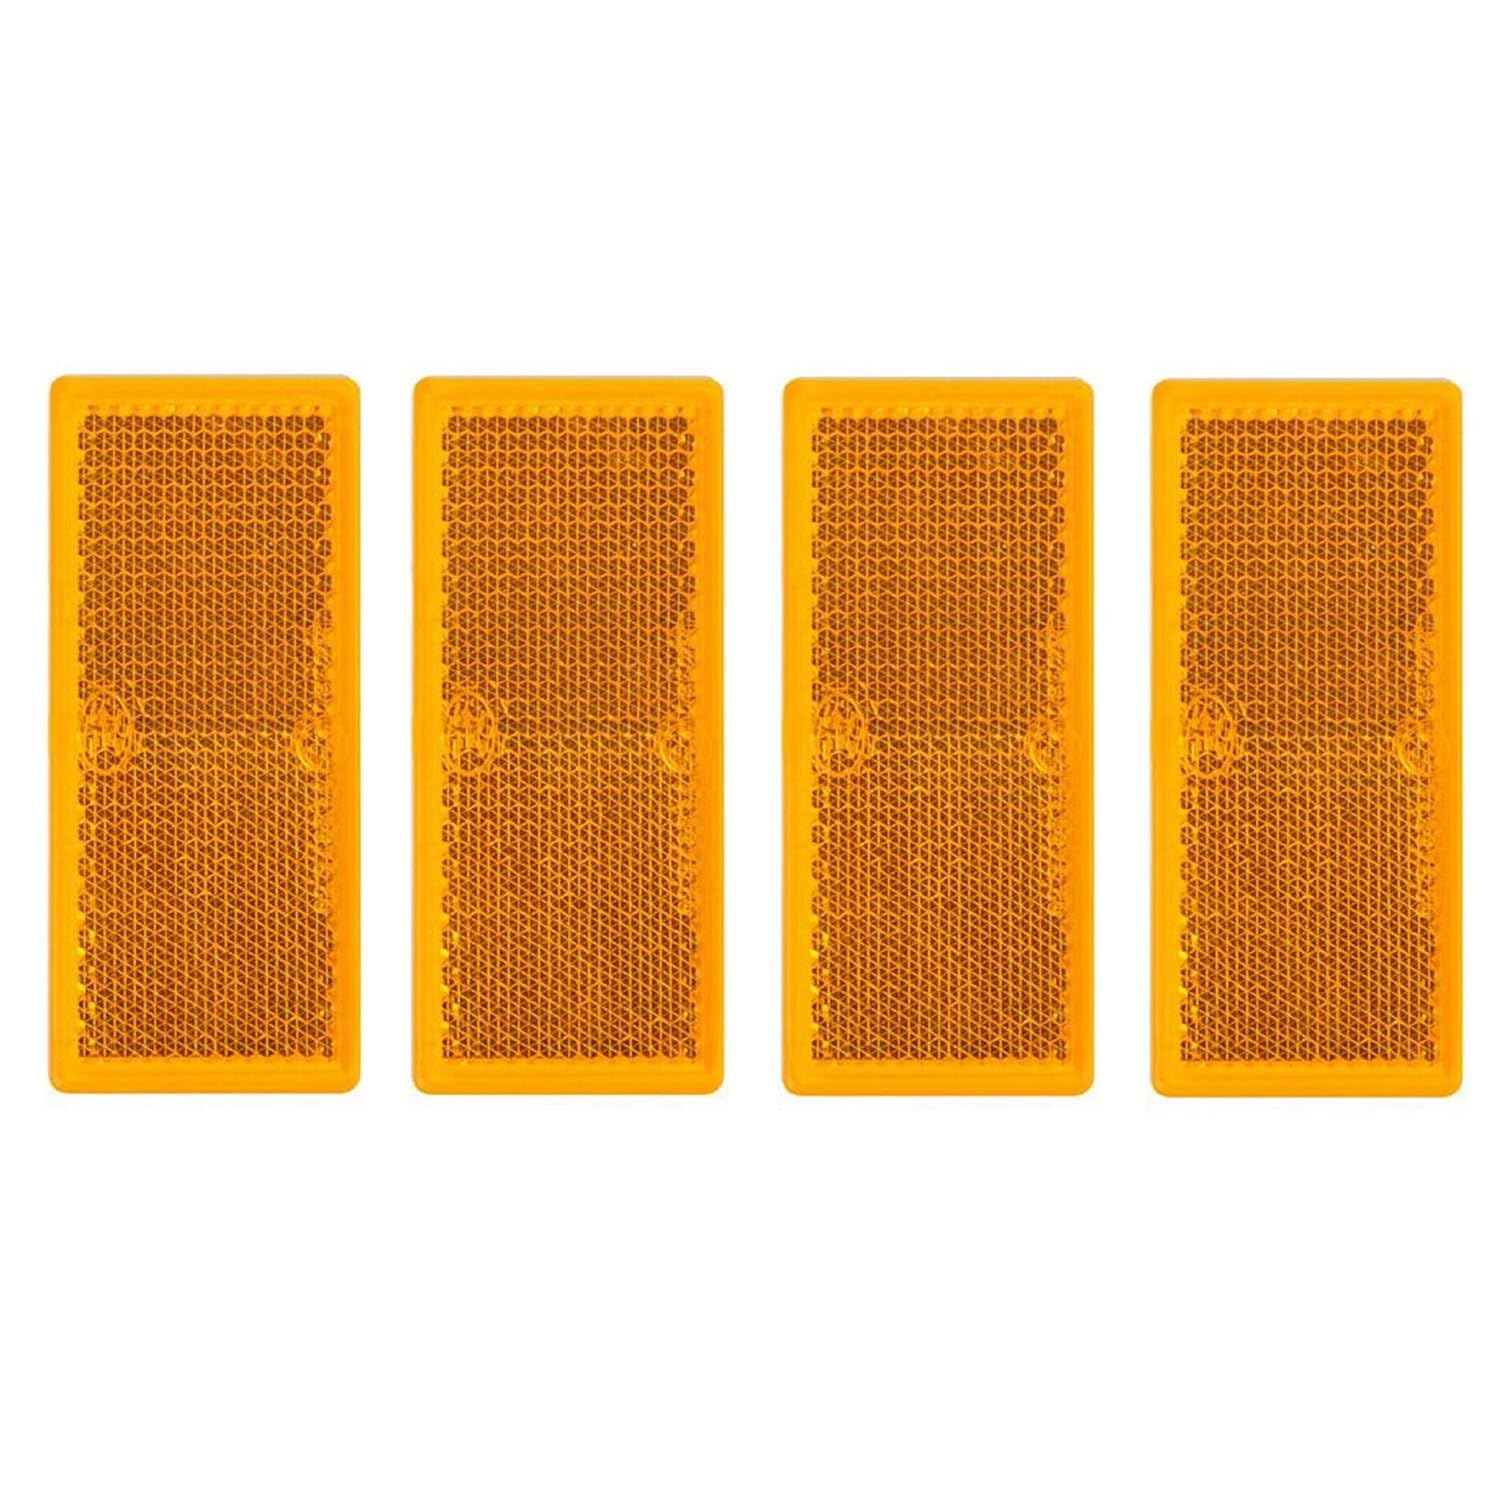 Preiswert&Gut 4 x Reflektor Orange klebend Rückstrahler Seitenstrahler Anhänger 82 x 36mm von Preiswert&Gut